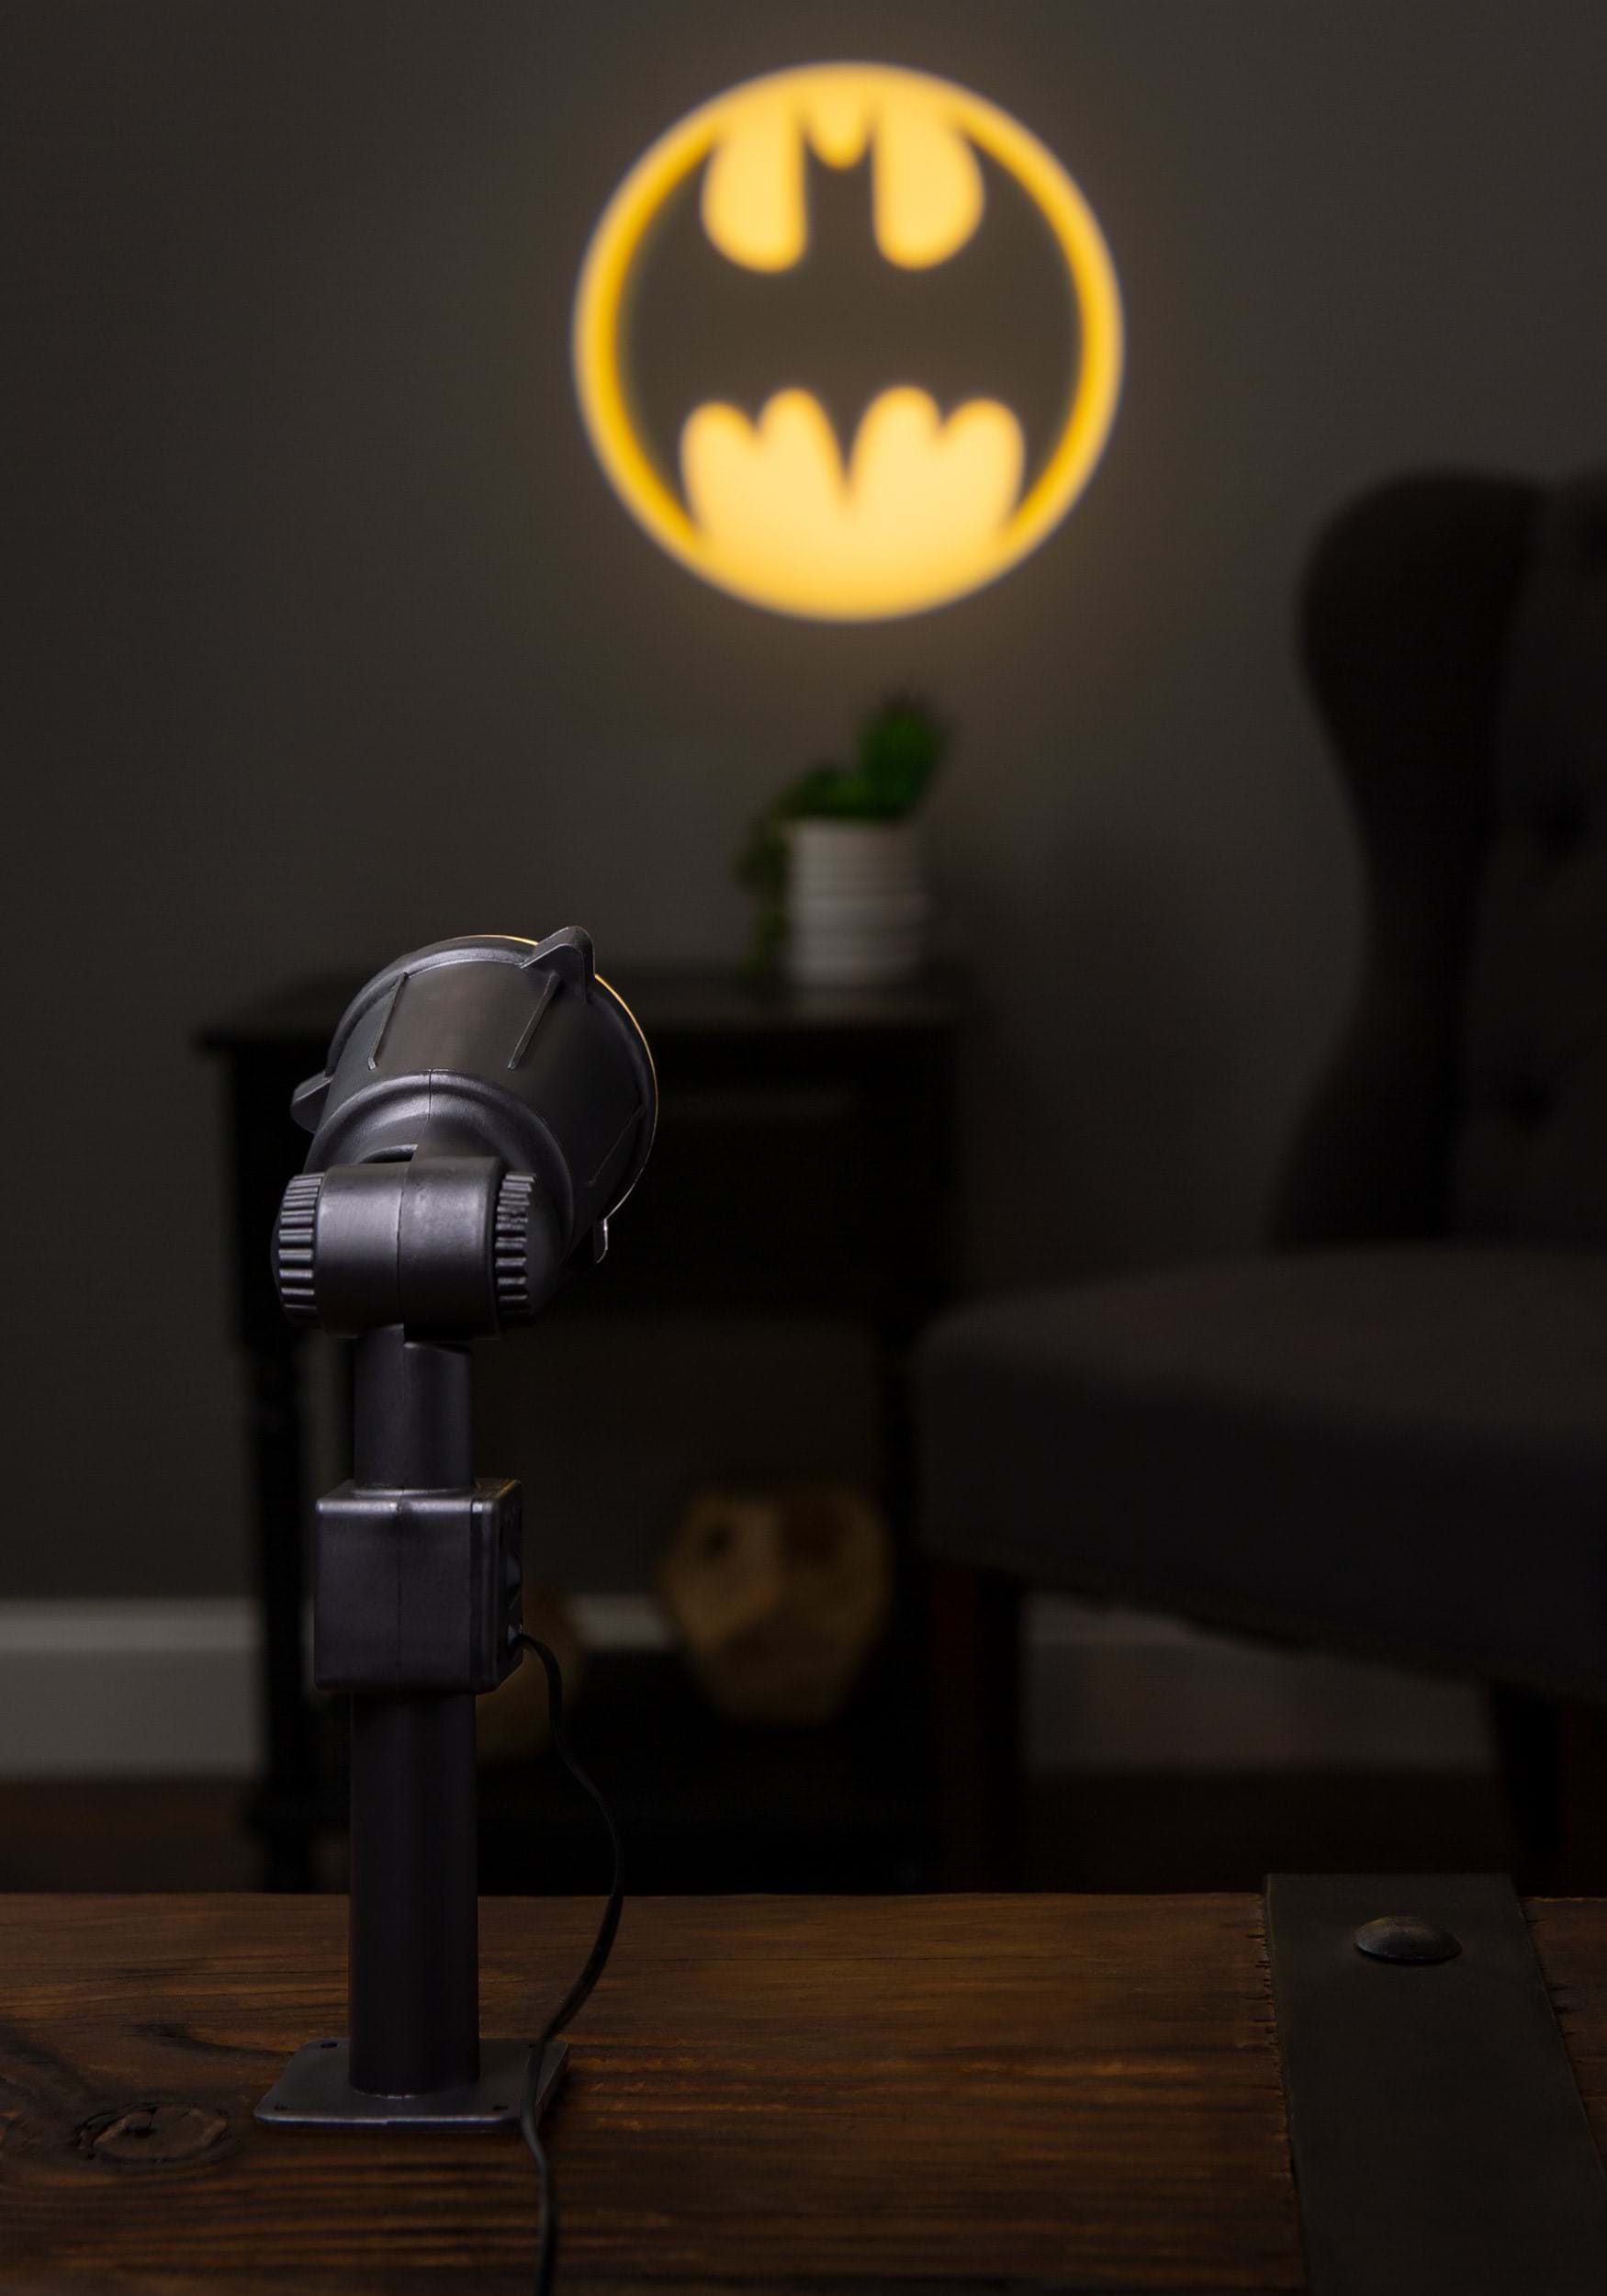 14" Batman Bat Signal Projector